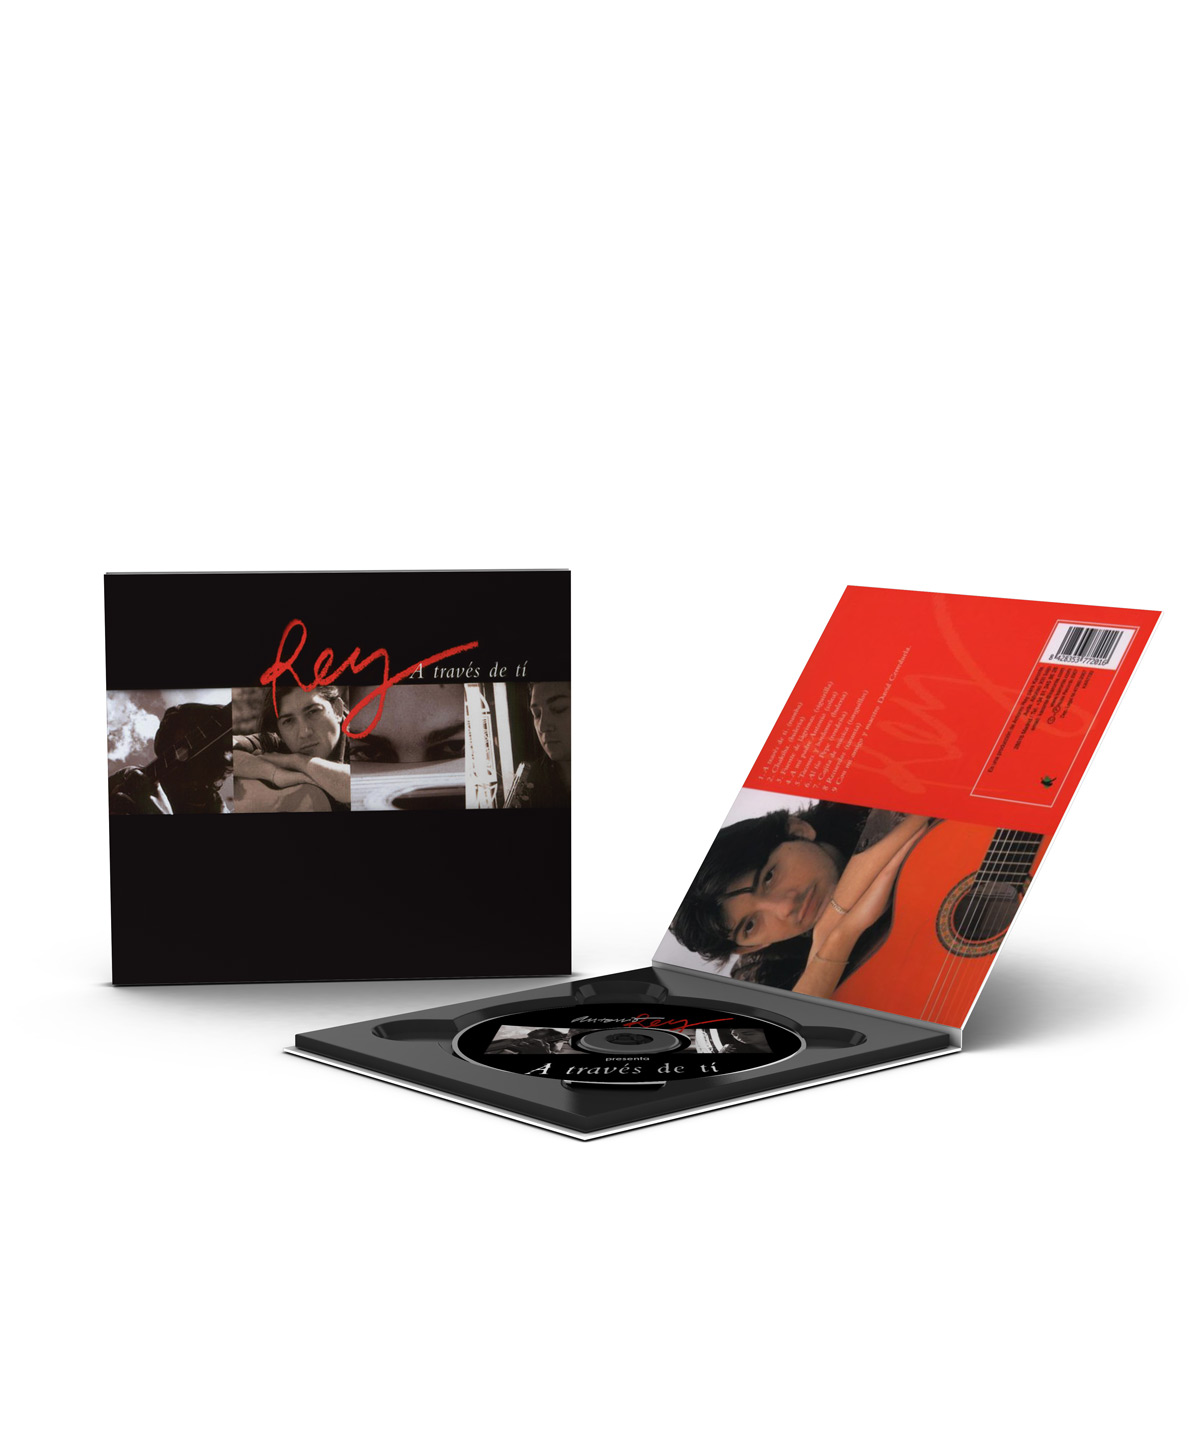 Antonio Rey flamenco CD - A través de ti